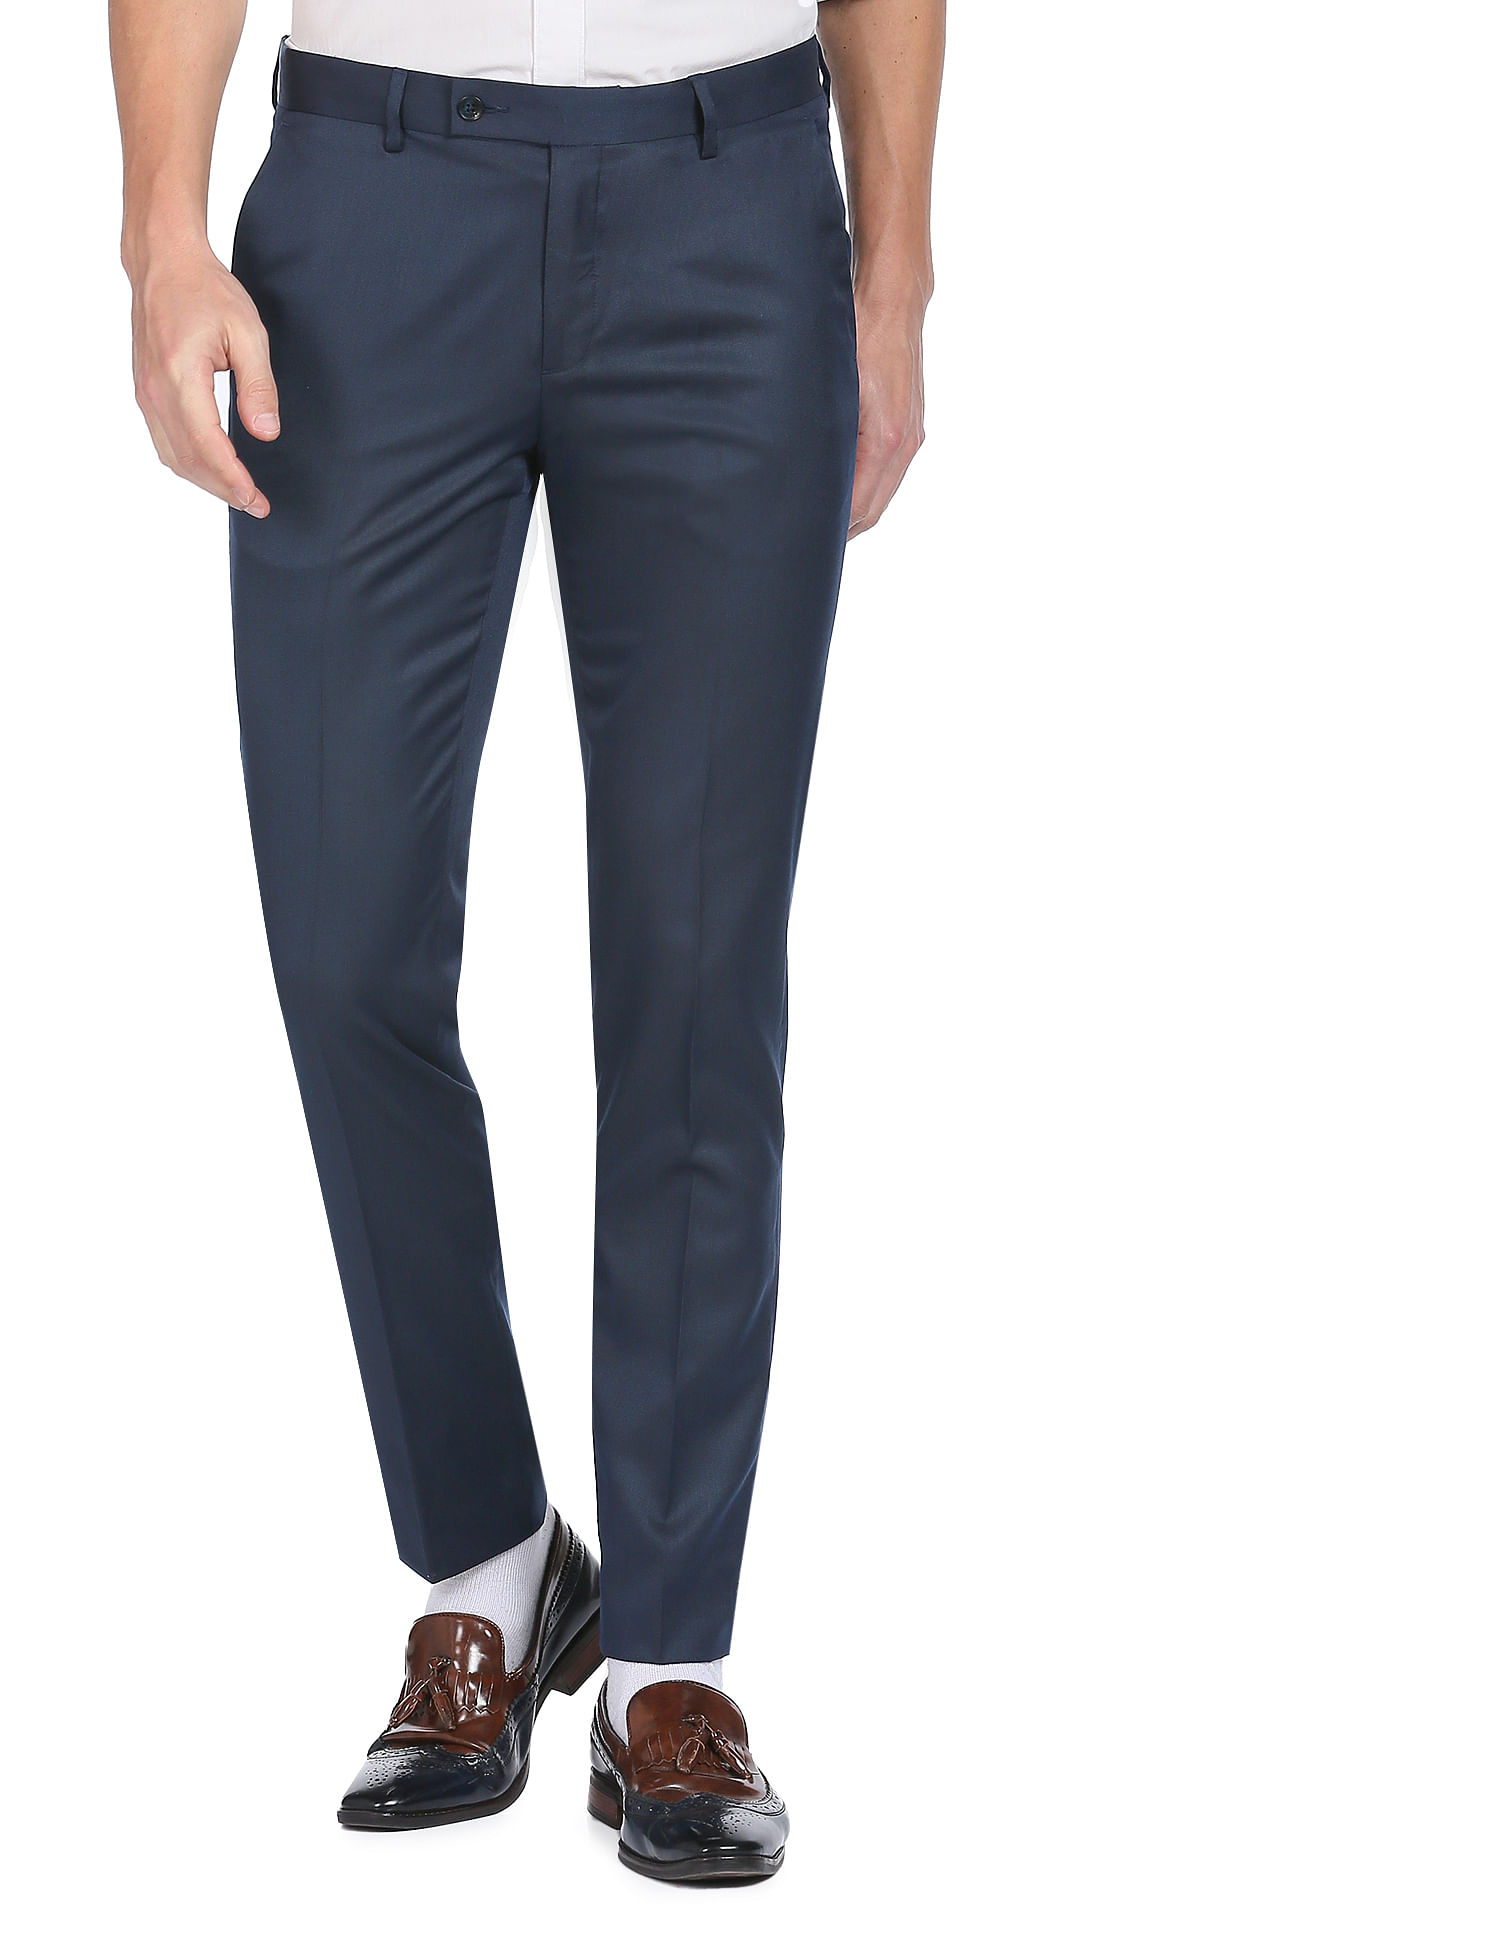 Formal Trouser: Explore Men Black Cotton Formal Trouser on Cliths.com